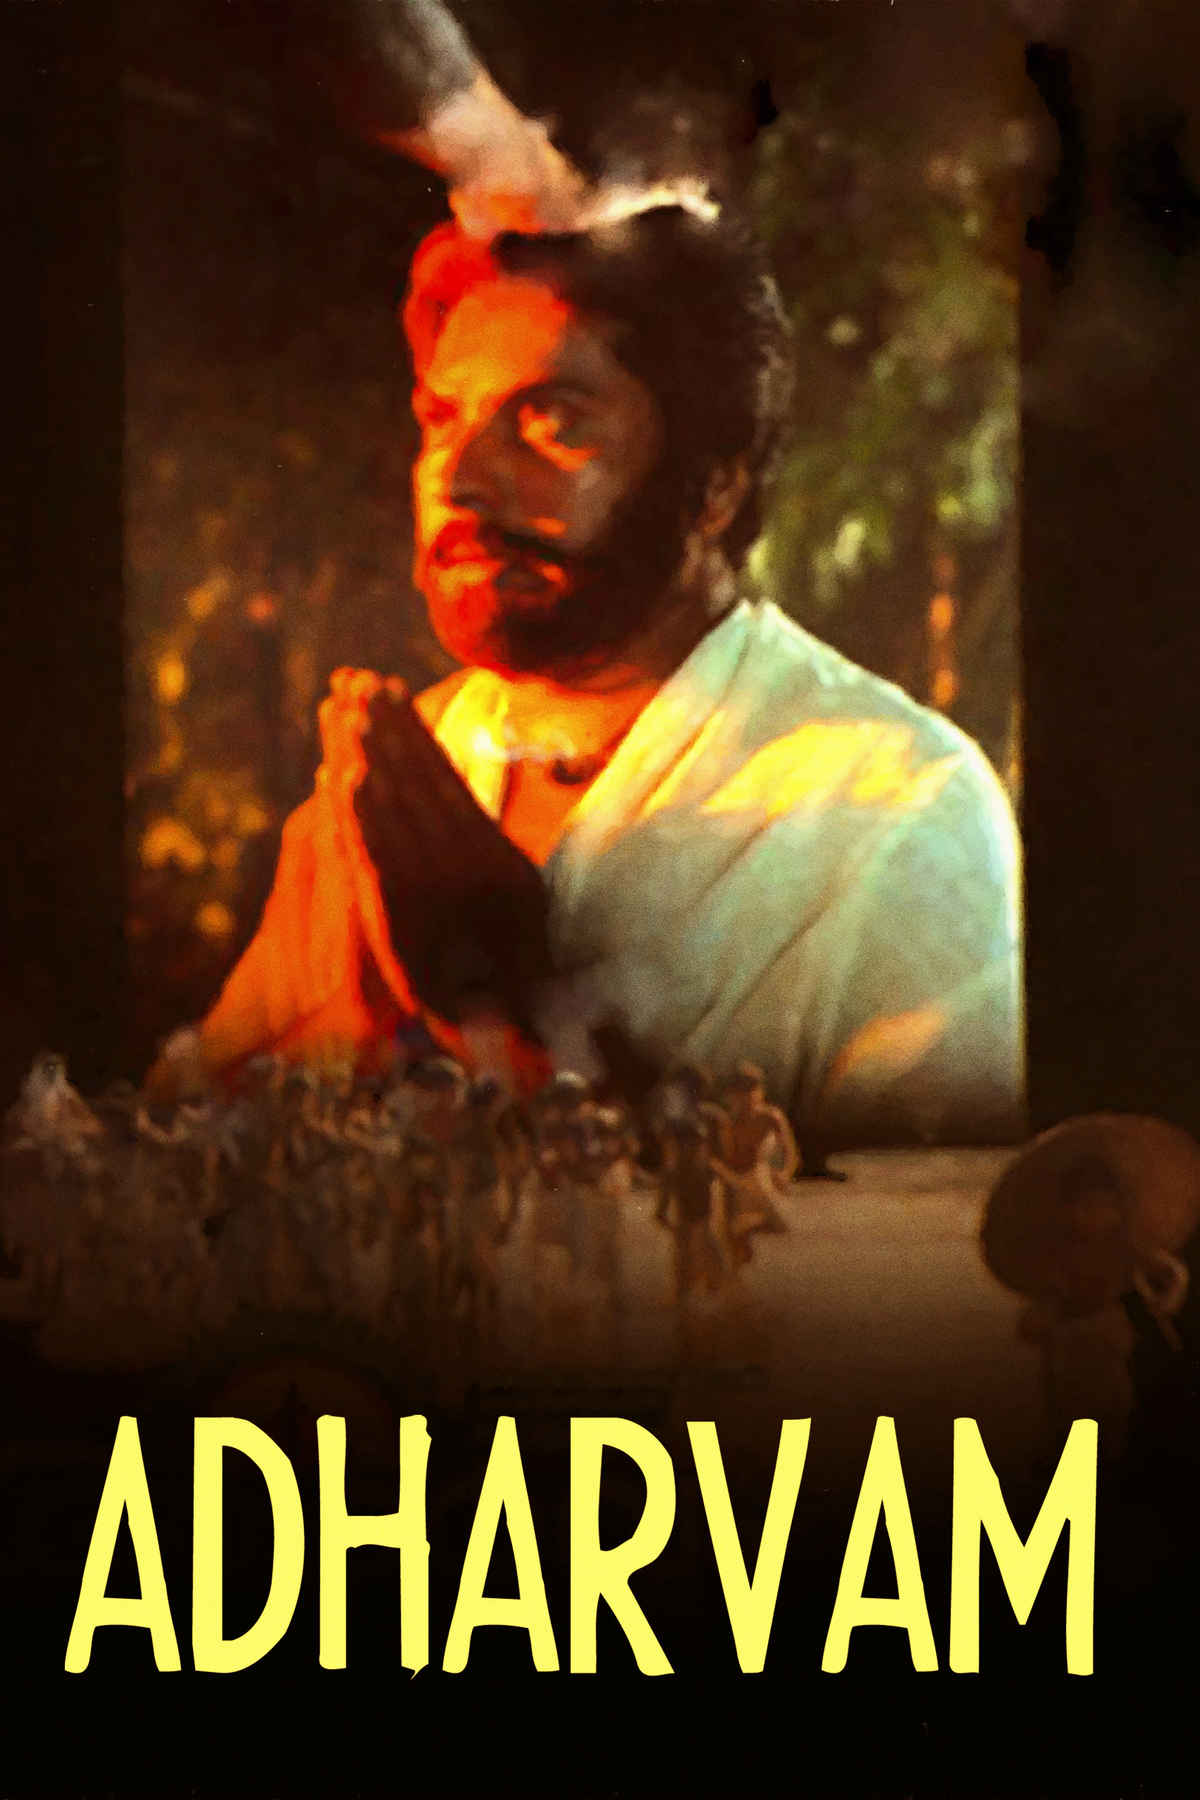 Adharvam